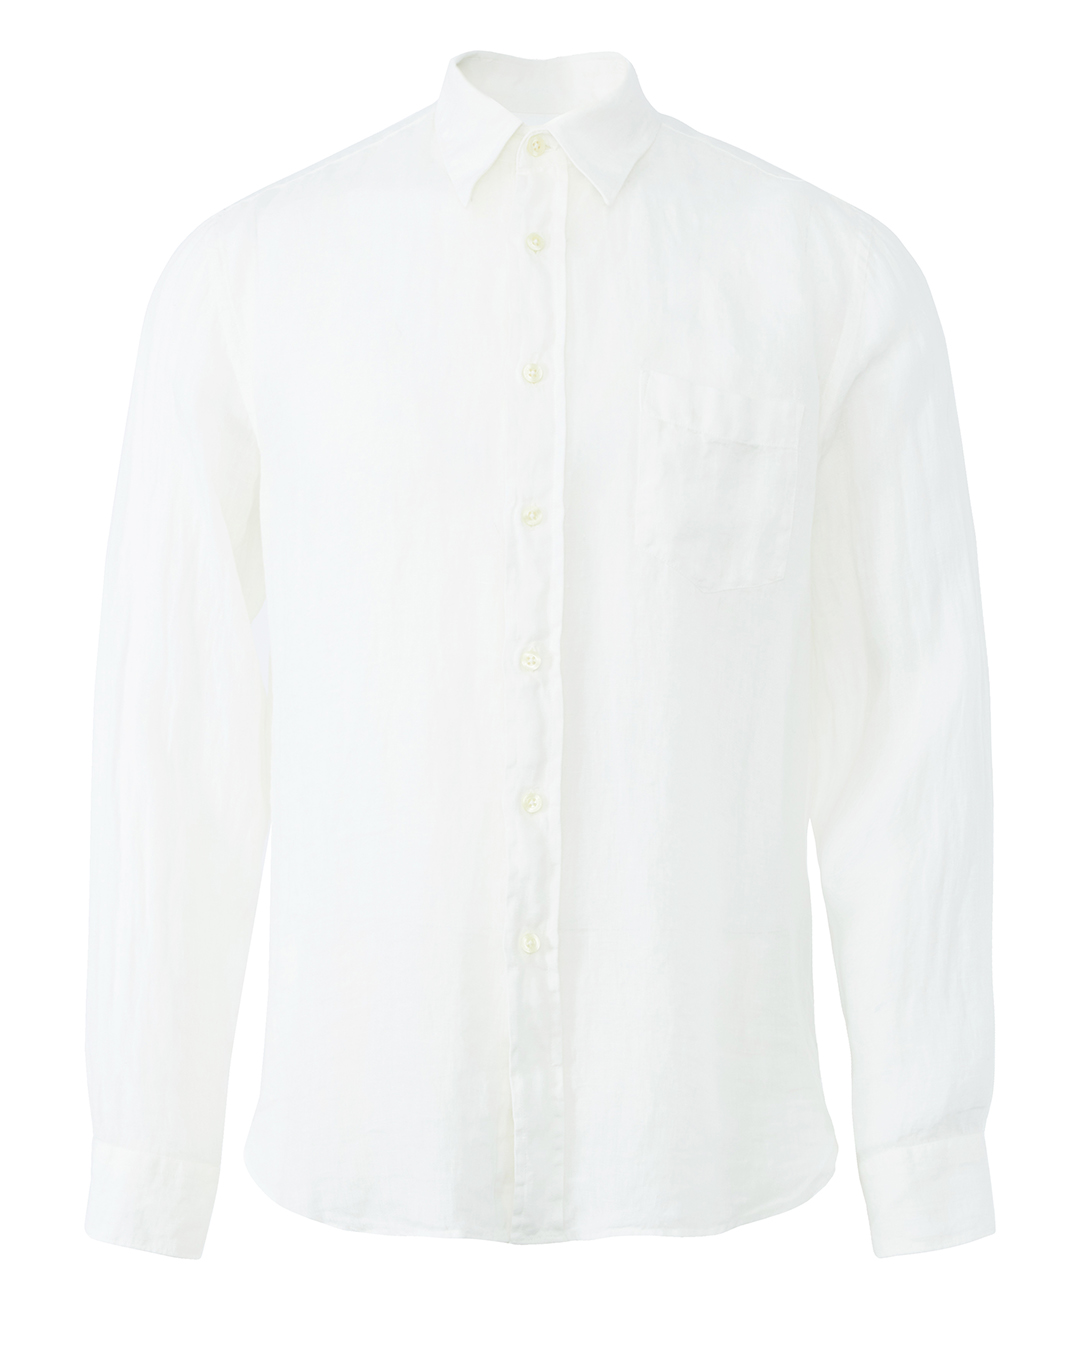 рубашка 120% lino V0M1425-0-00 белый 3xl, размер 3xl